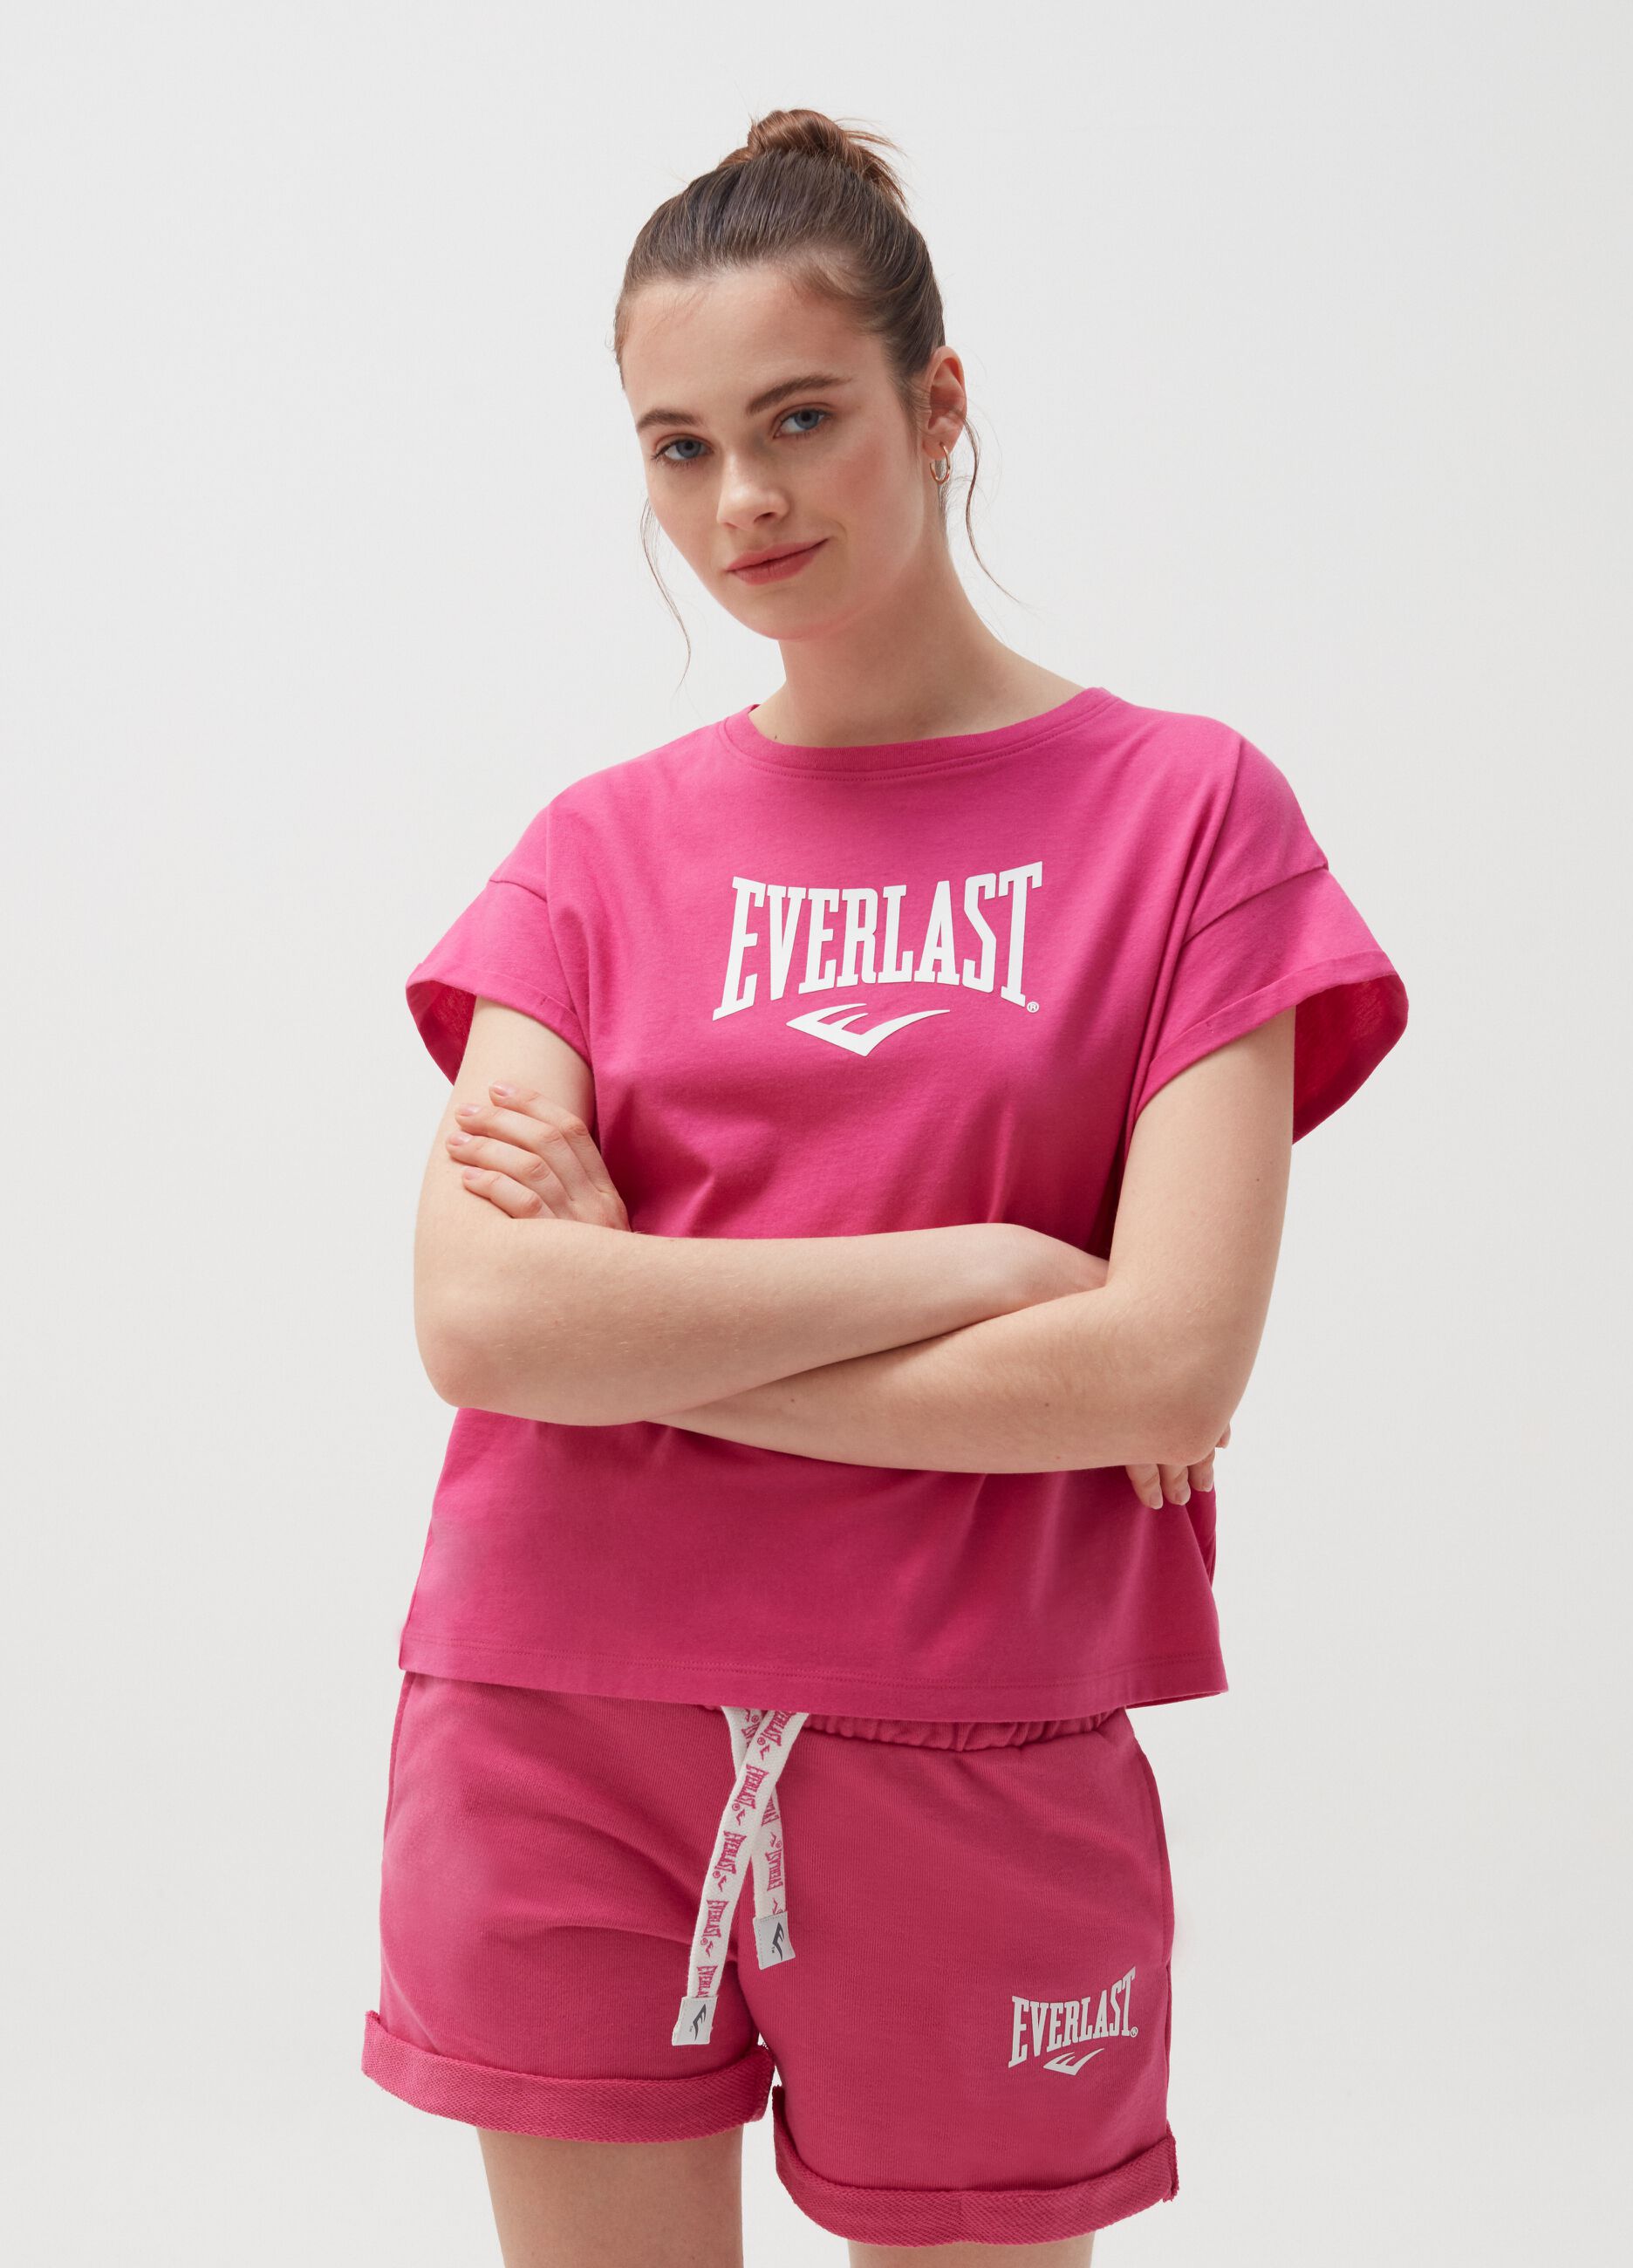 Camiseta de algodón con logo Everlast estampado